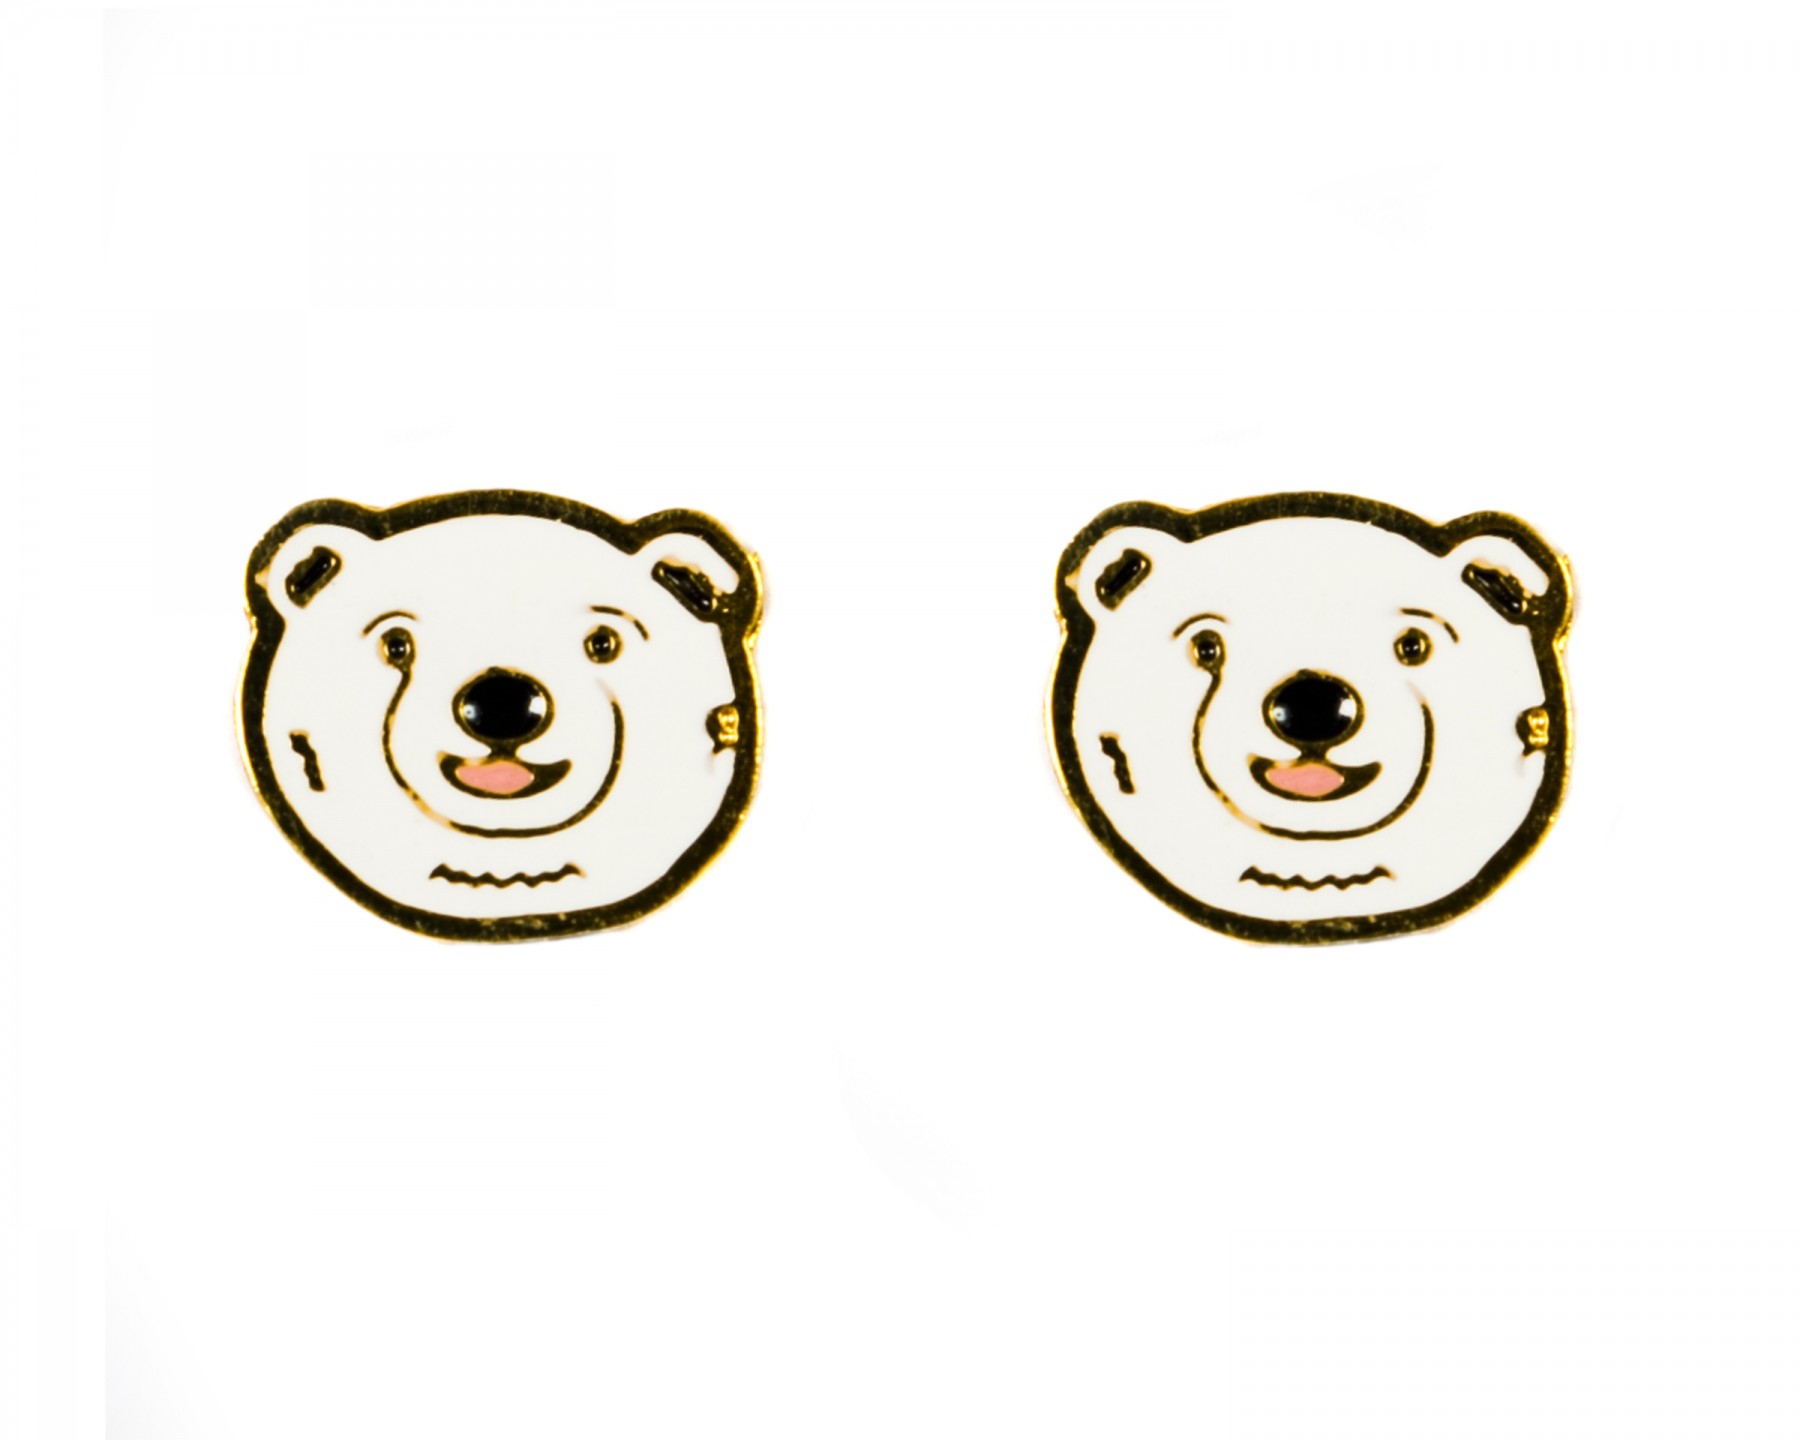 Paul polar bear earrings